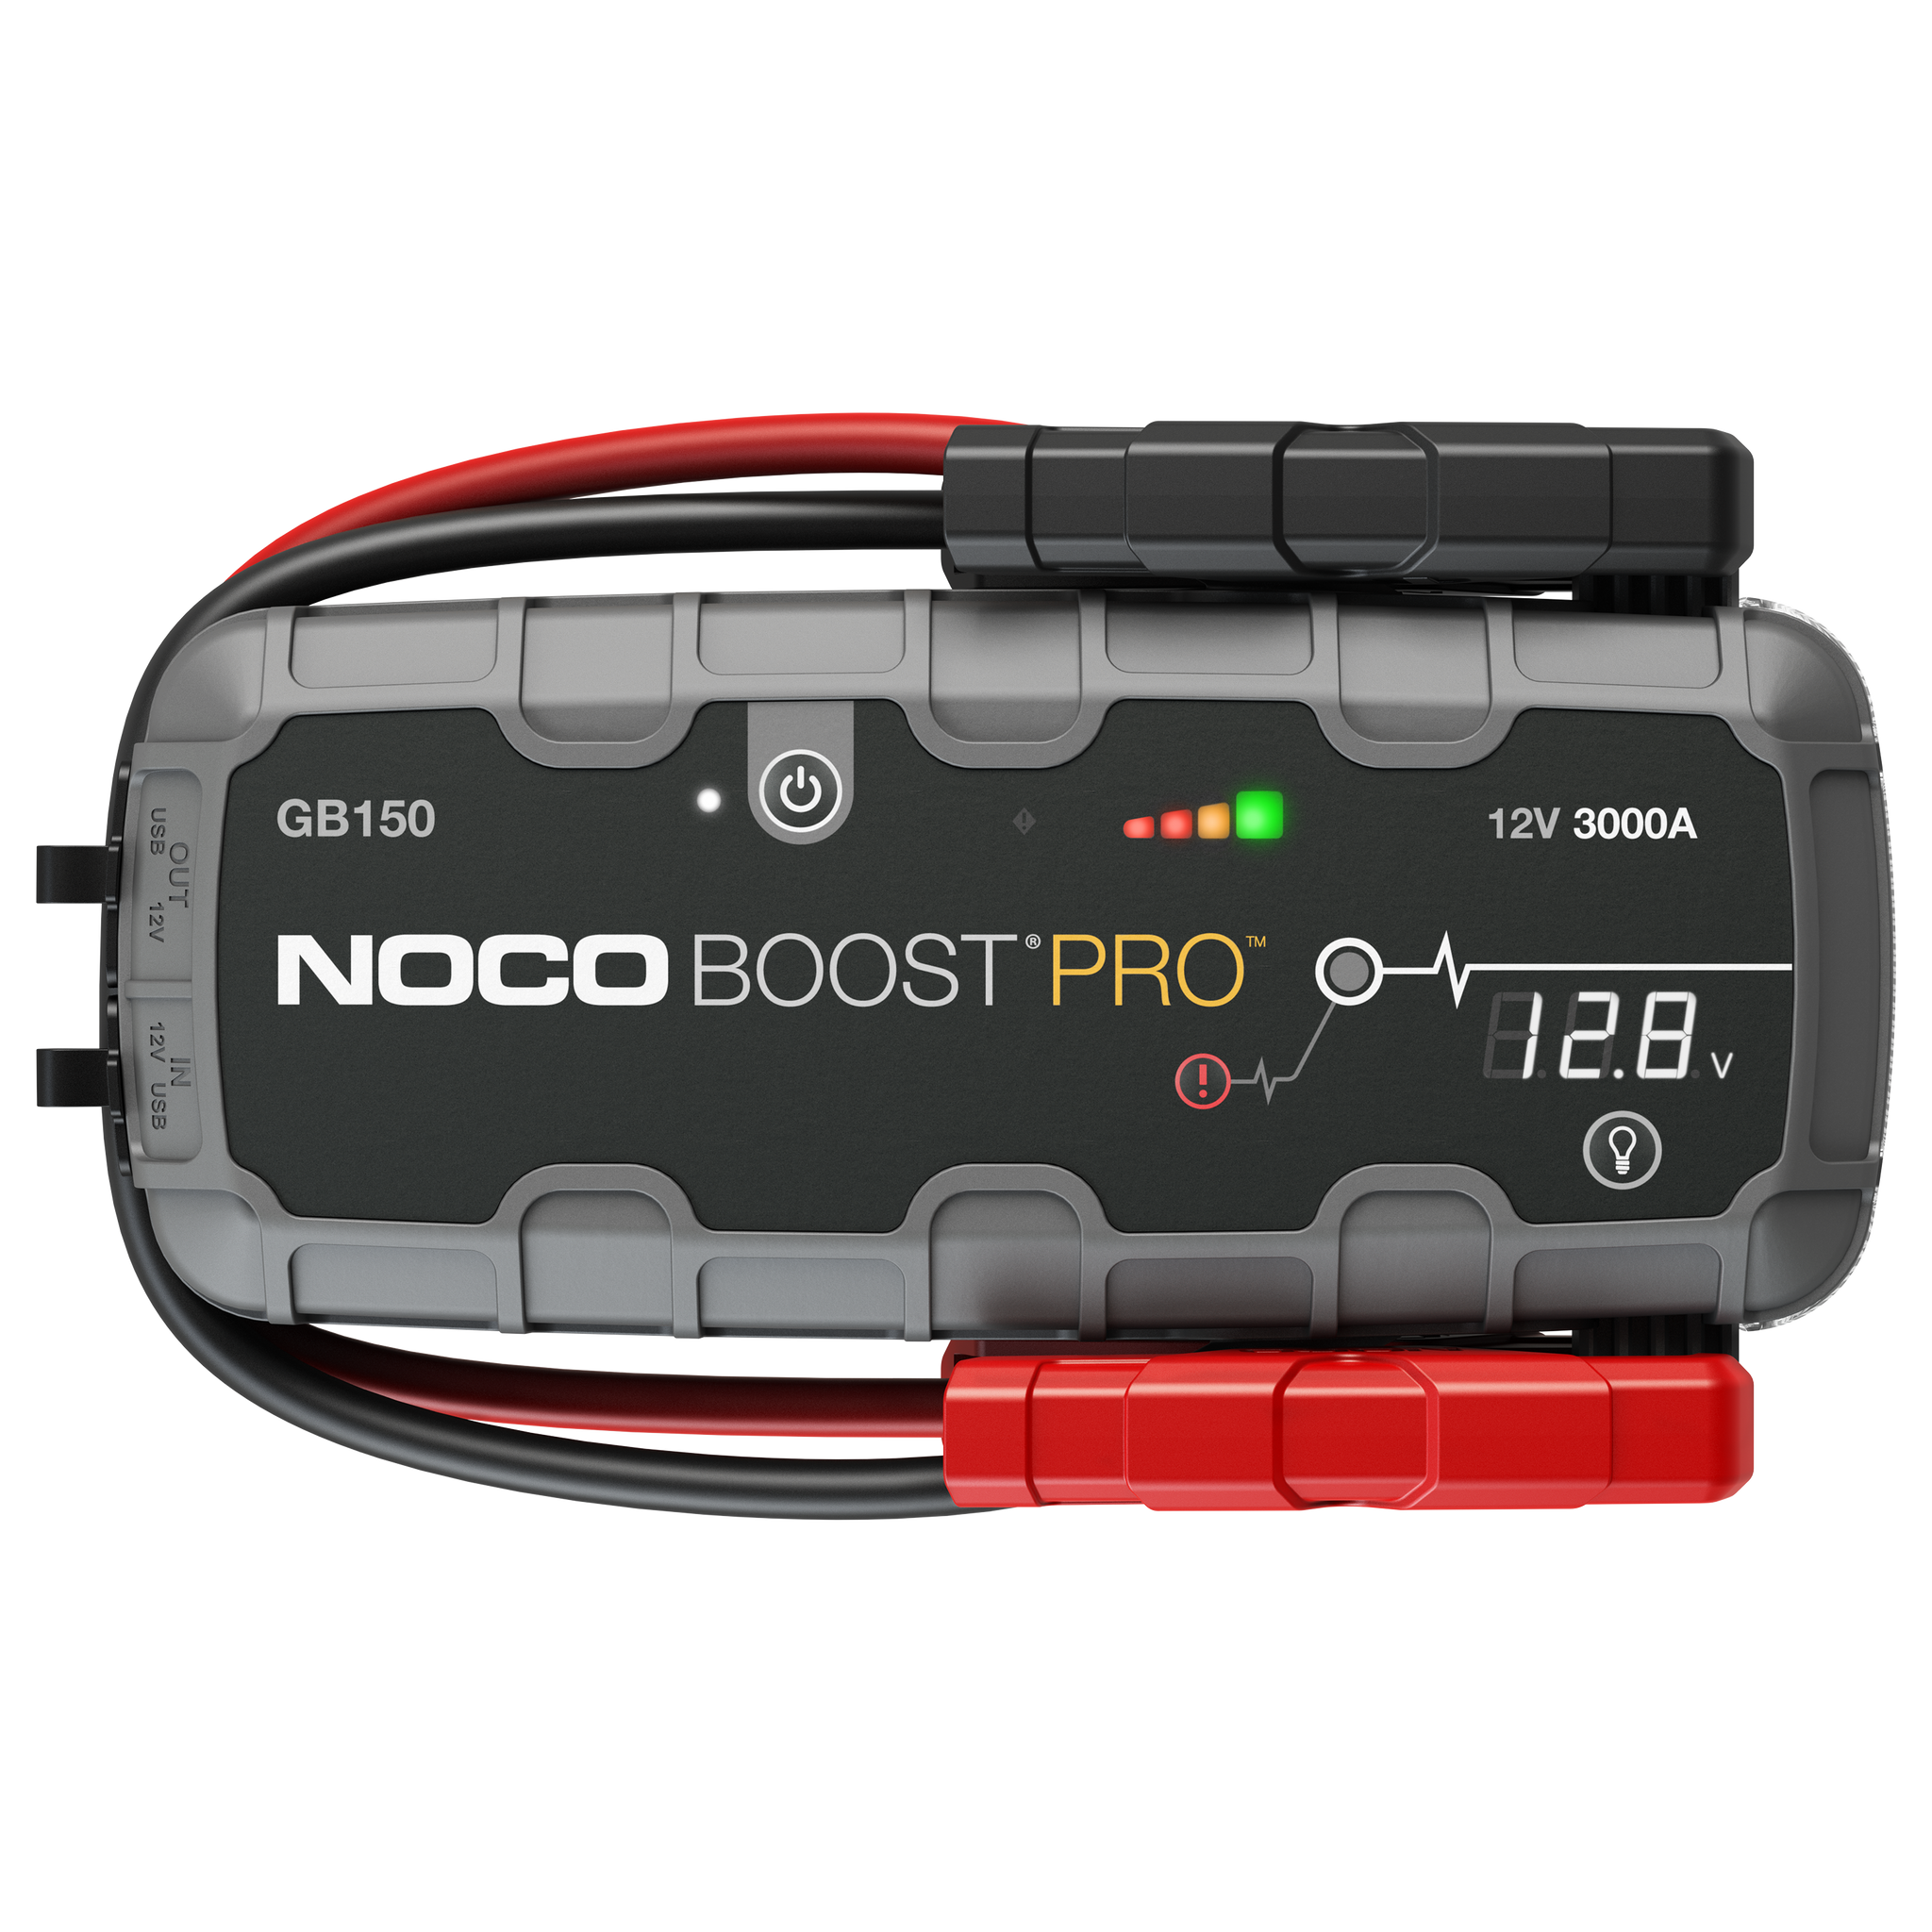 NOCO GB150 Boost Pro 3,000A